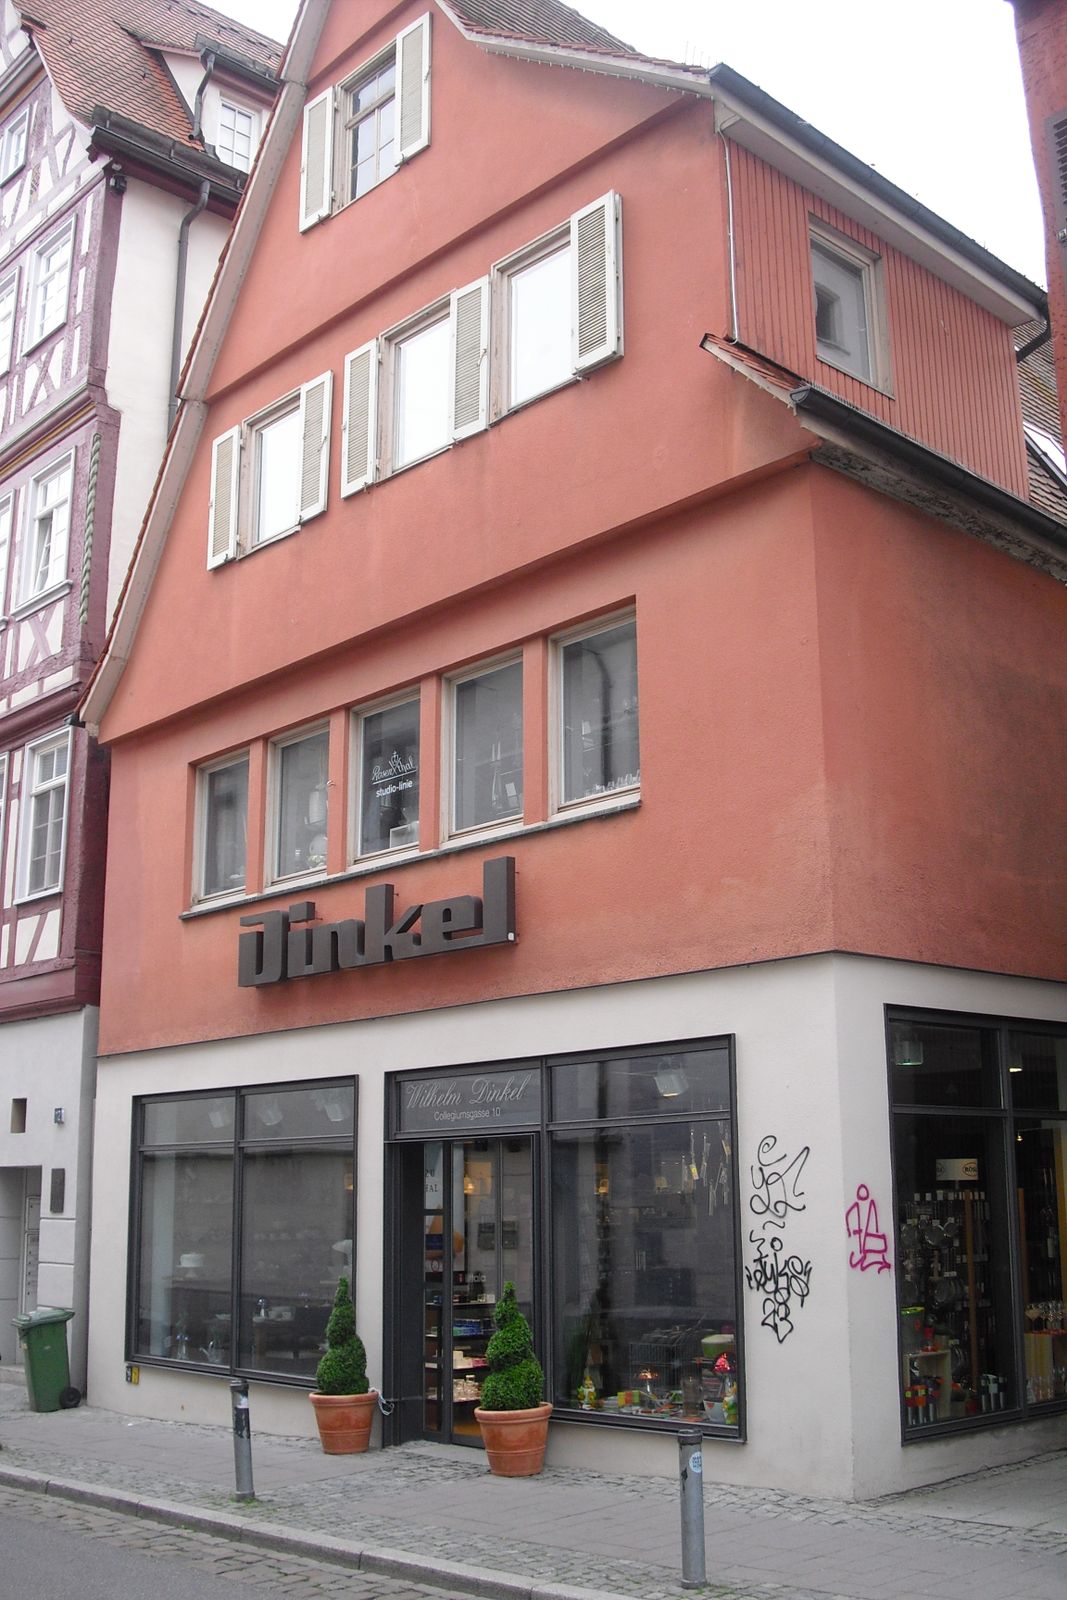 Dinkel Wilhelm Haushaltswaren in Tübingen ⇒ in Das Örtliche